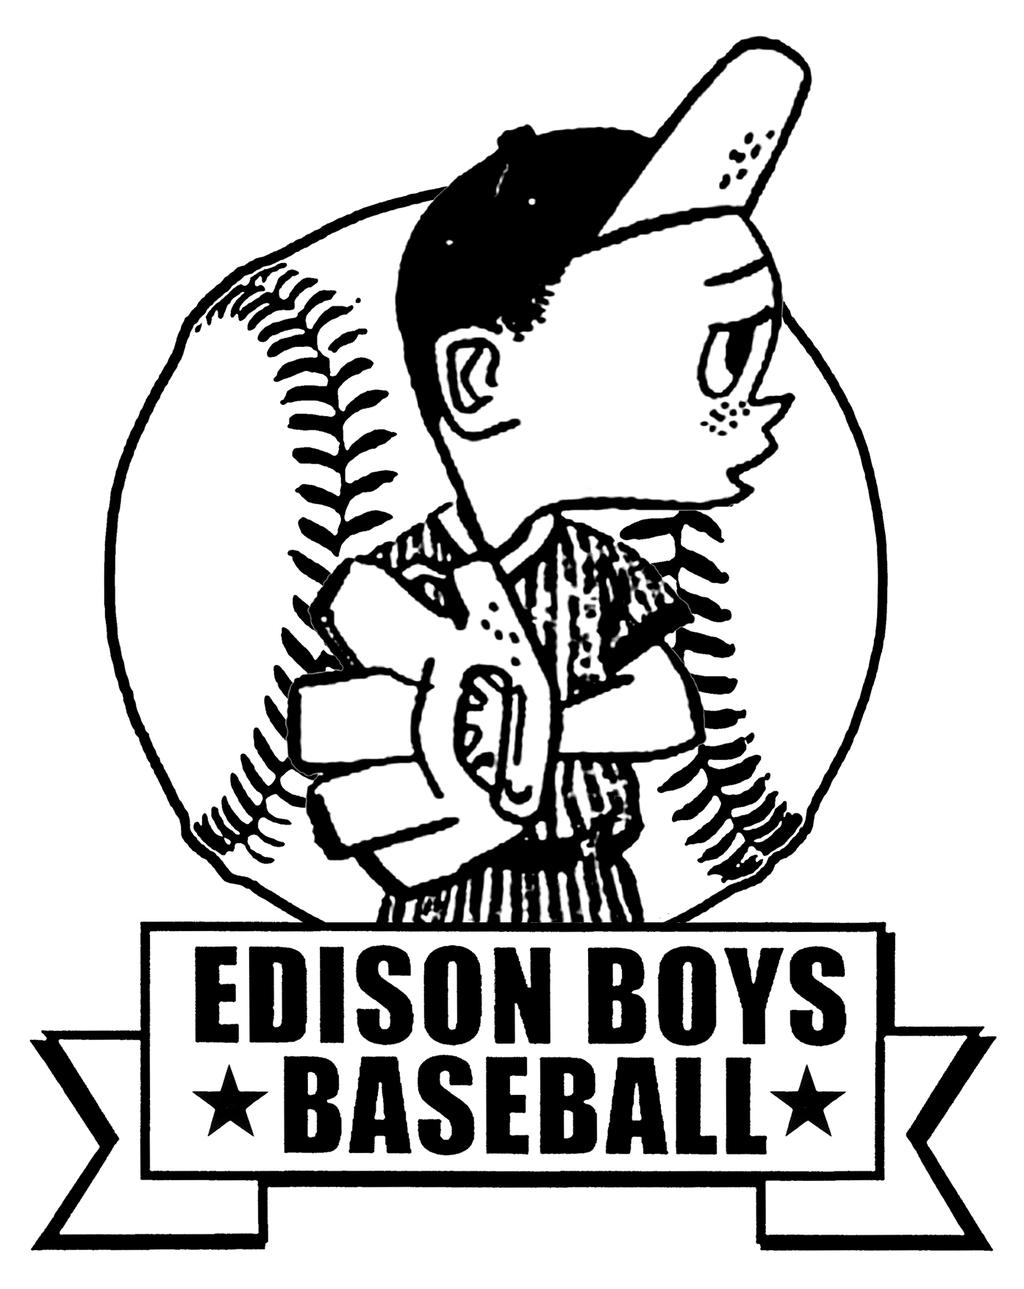 EDISON BOYS BASEBALL, INC.